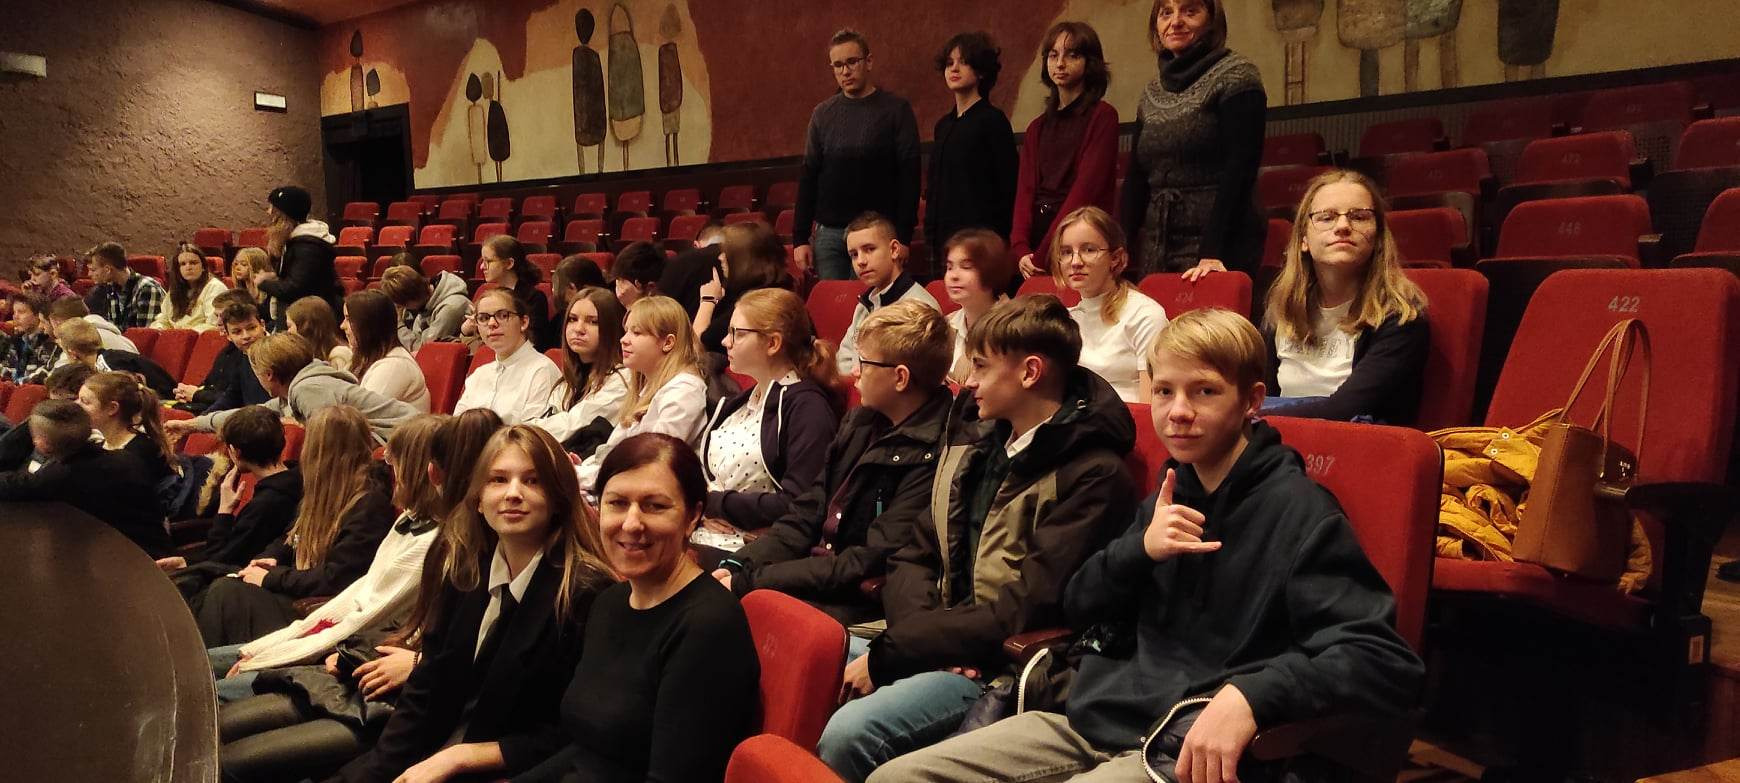 Uczniowie razem z nauczycielami siedzący i czekający na przedstawienie w Oświęcimskim Centrum Kultury